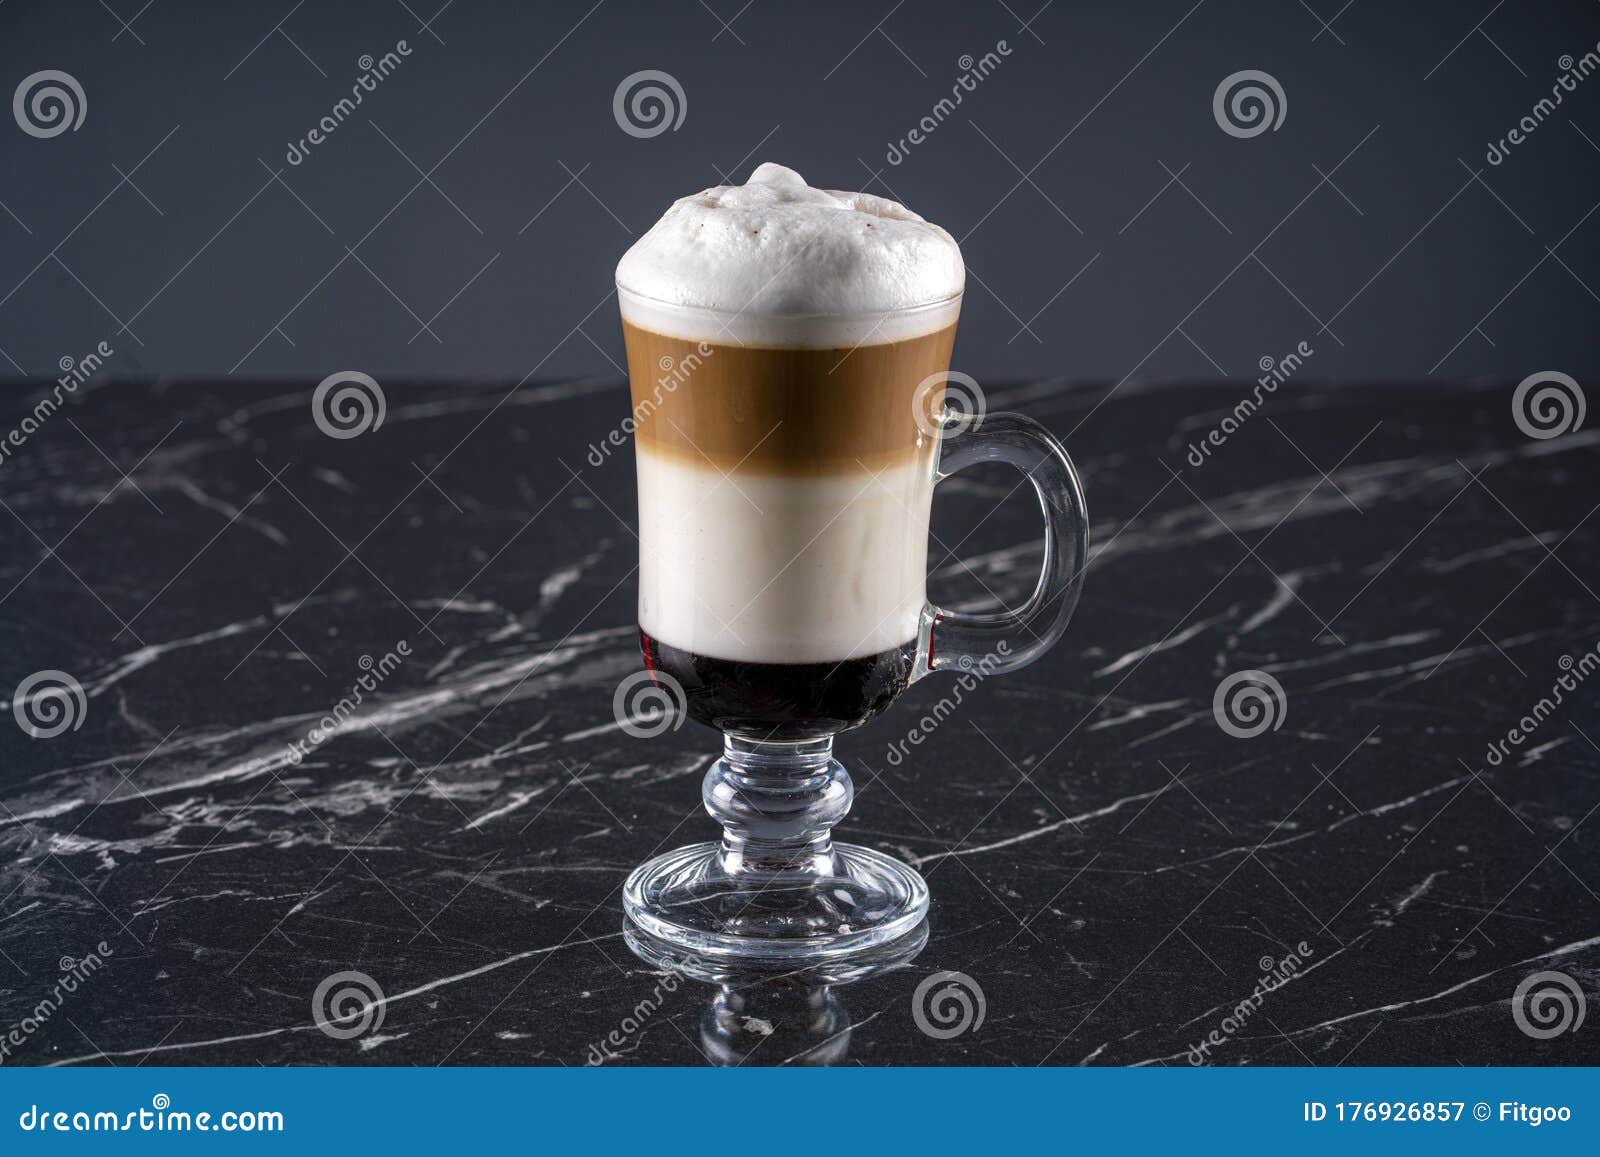 coffee cafe latte macchiato in a glass stock photo